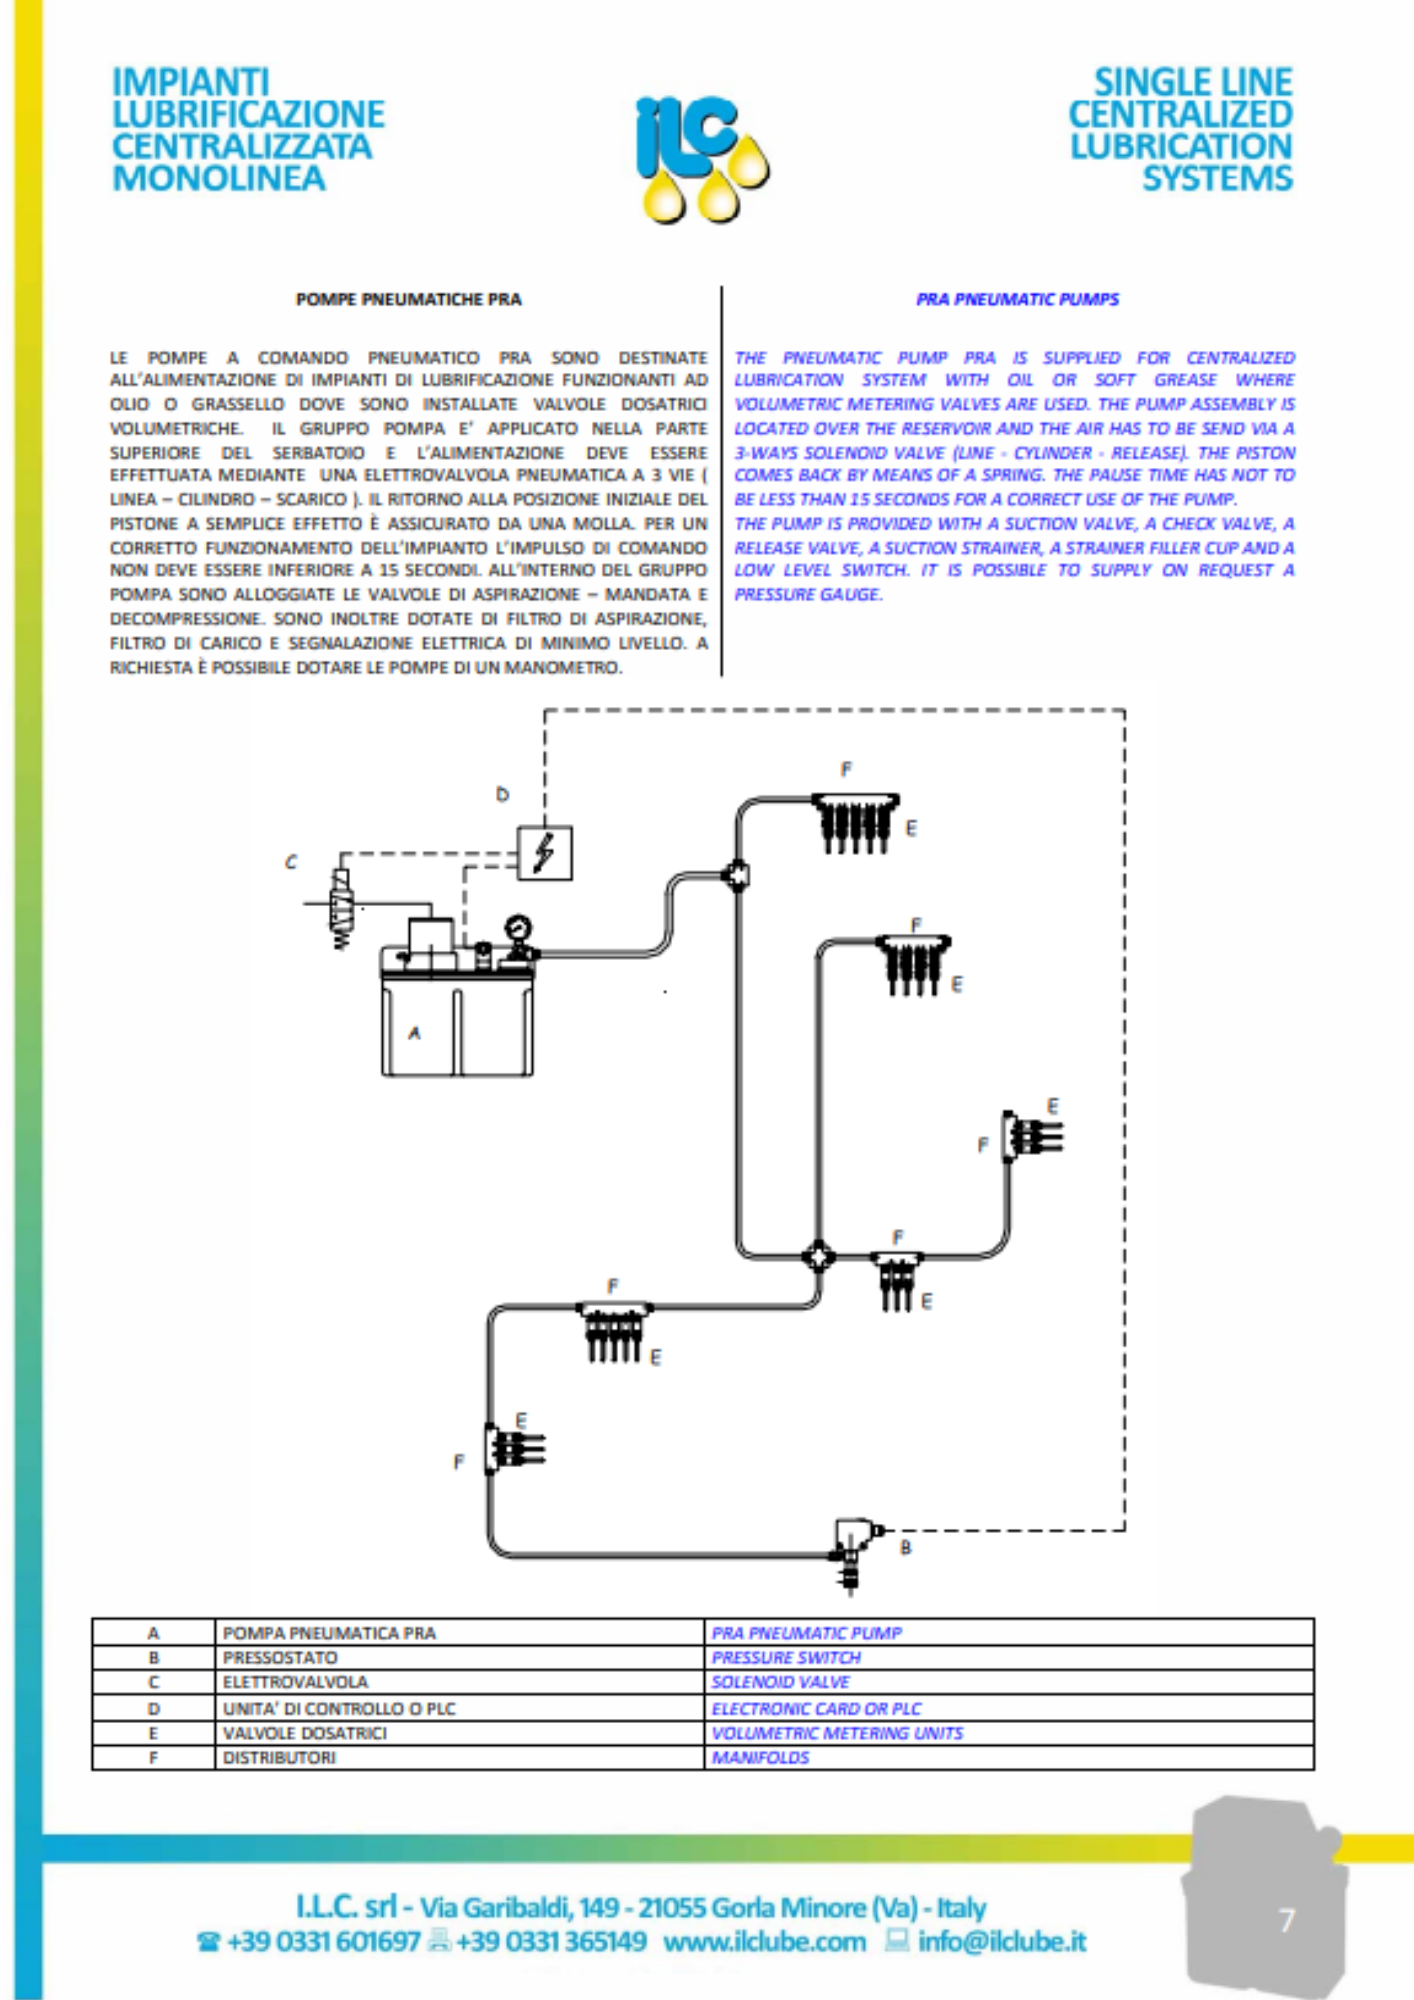 ILC: lubrification volumétrique (série PRA)